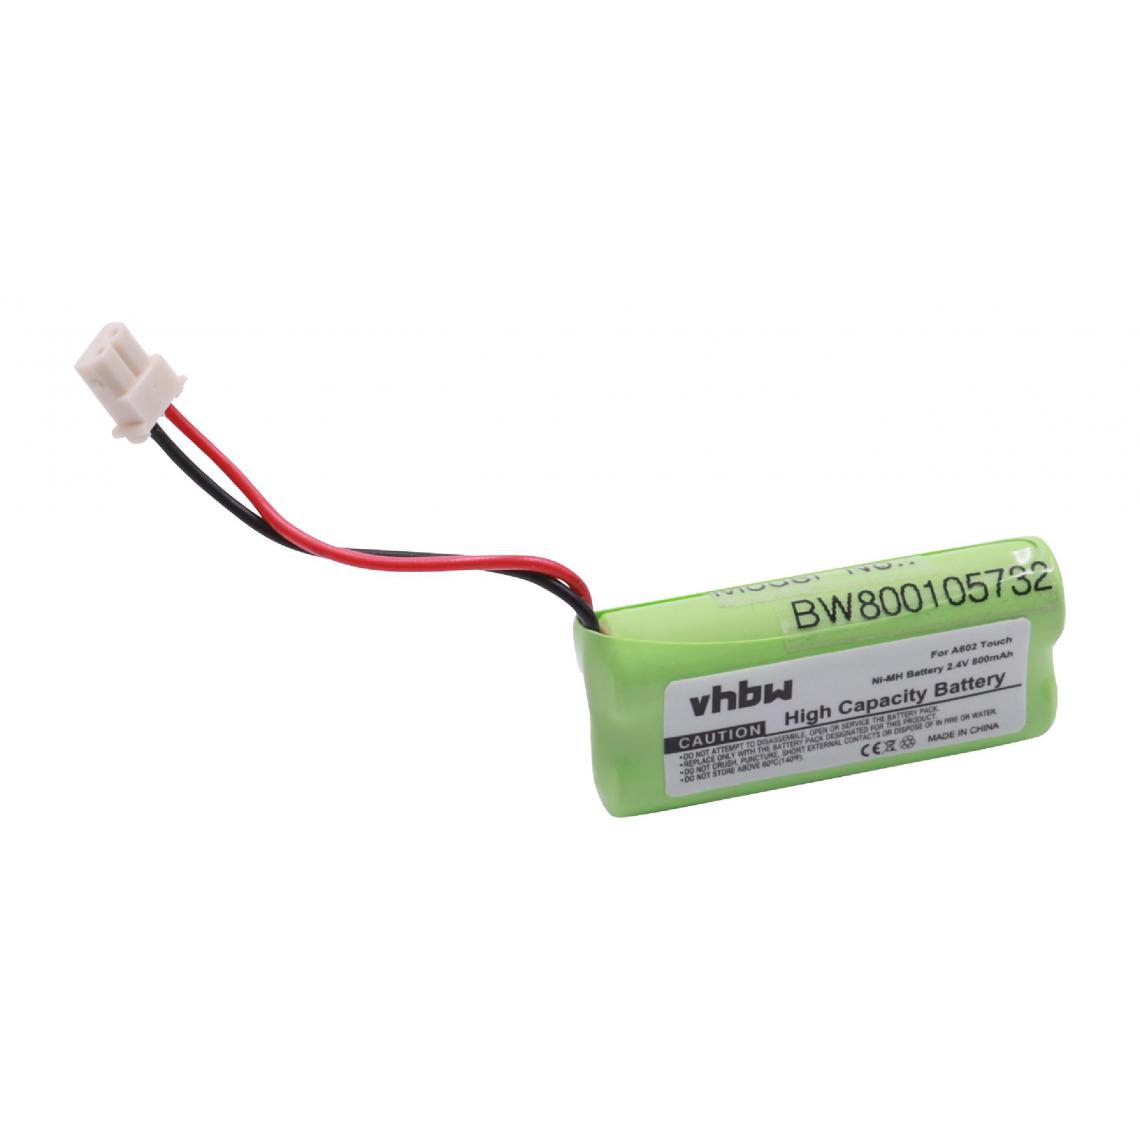 Vhbw - vhbw Batterie compatible avec V-Tech DS6521-2, DS65213, DS6521-3, DS65223, DS6522-3 téléphone fixe sans fil (800mAh, 2,4V, NiMH) - Batterie téléphone